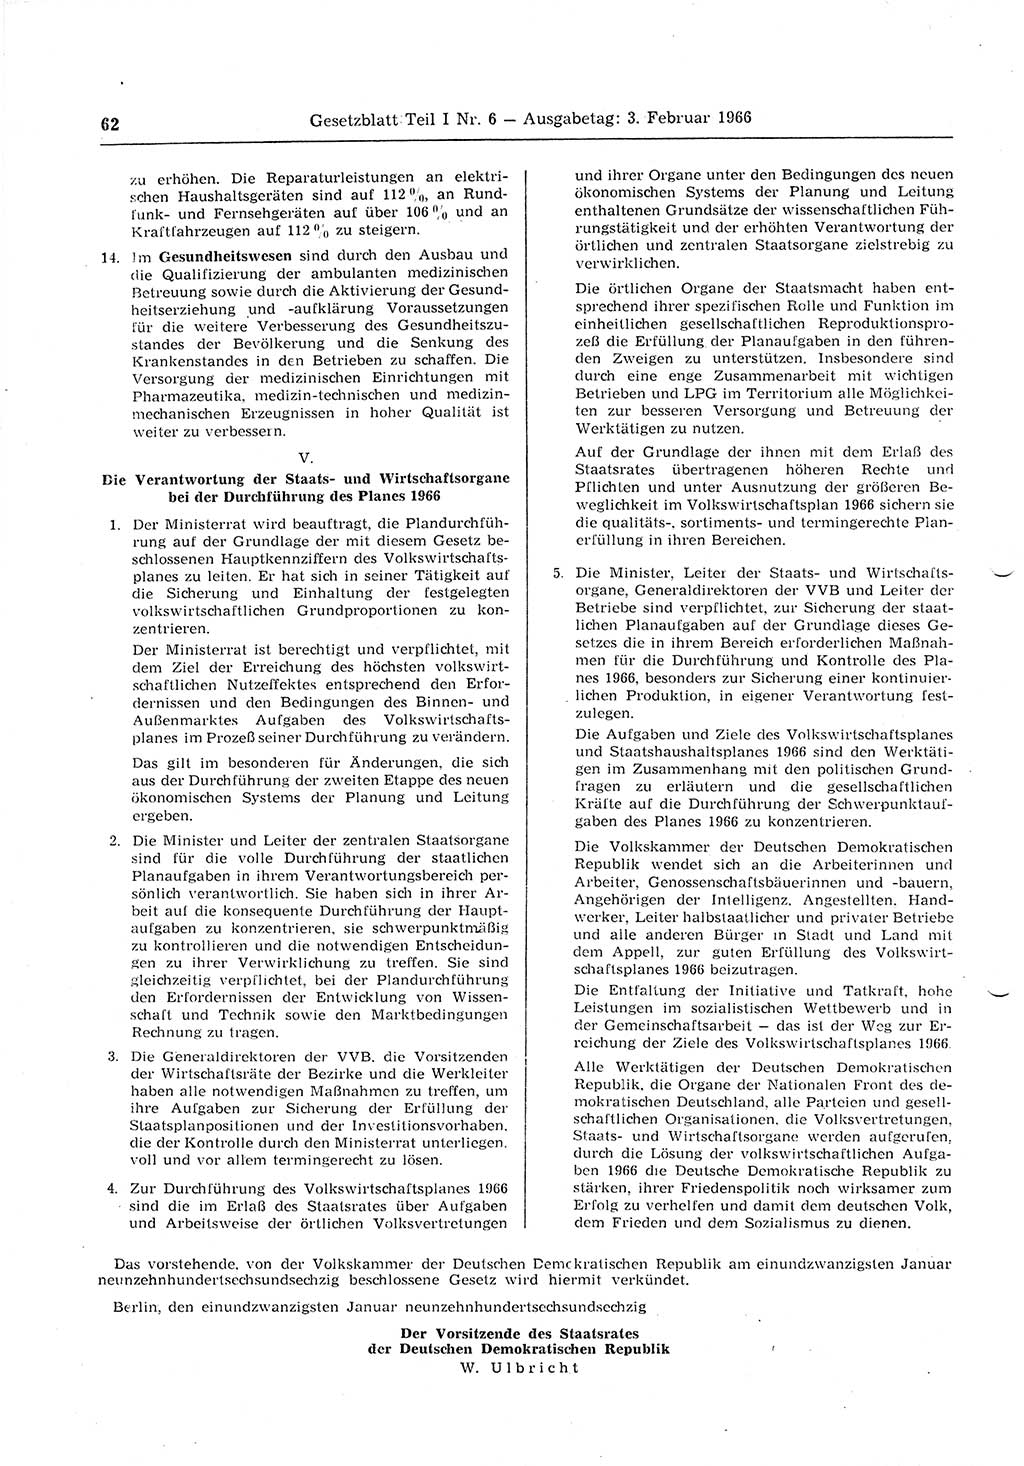 Gesetzblatt (GBl.) der Deutschen Demokratischen Republik (DDR) Teil Ⅰ 1966, Seite 62 (GBl. DDR Ⅰ 1966, S. 62)